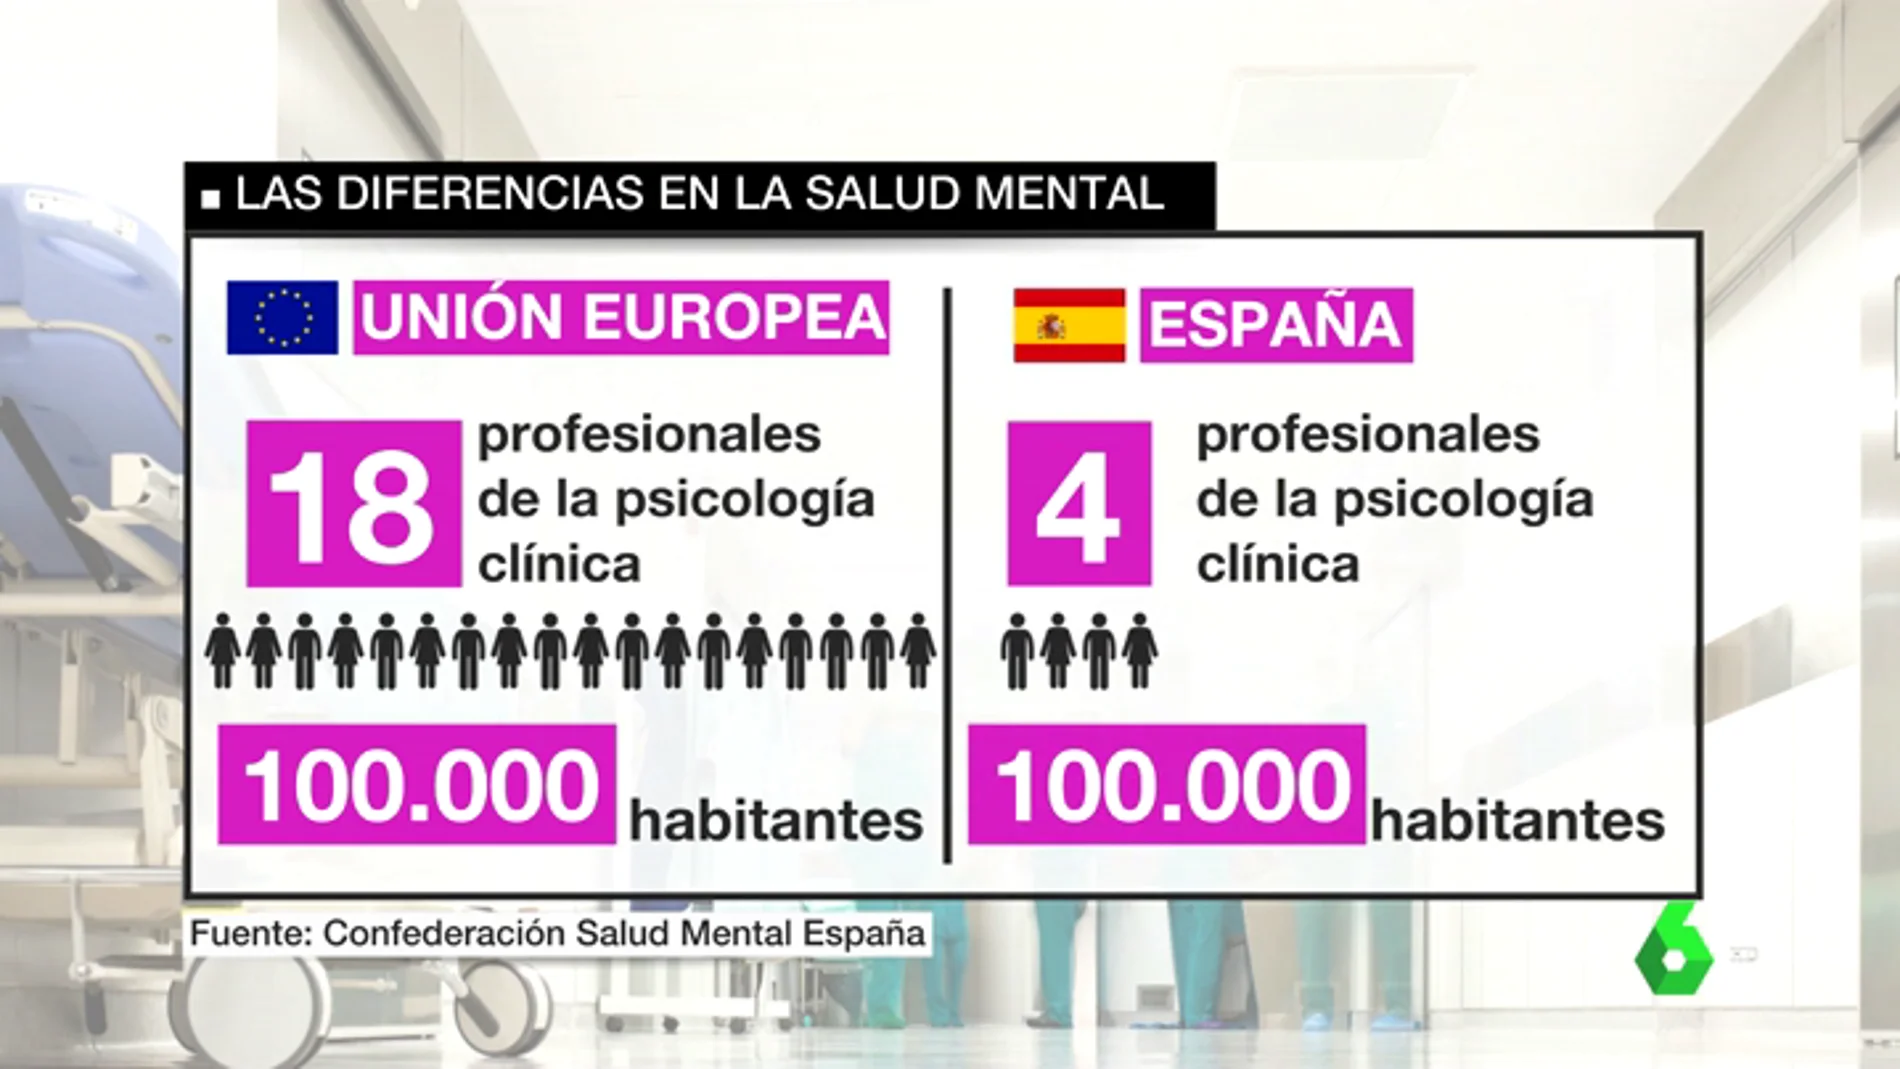 Los recortes convierten a la salud mental en la "hermana pobre" del sistema sanitario público español